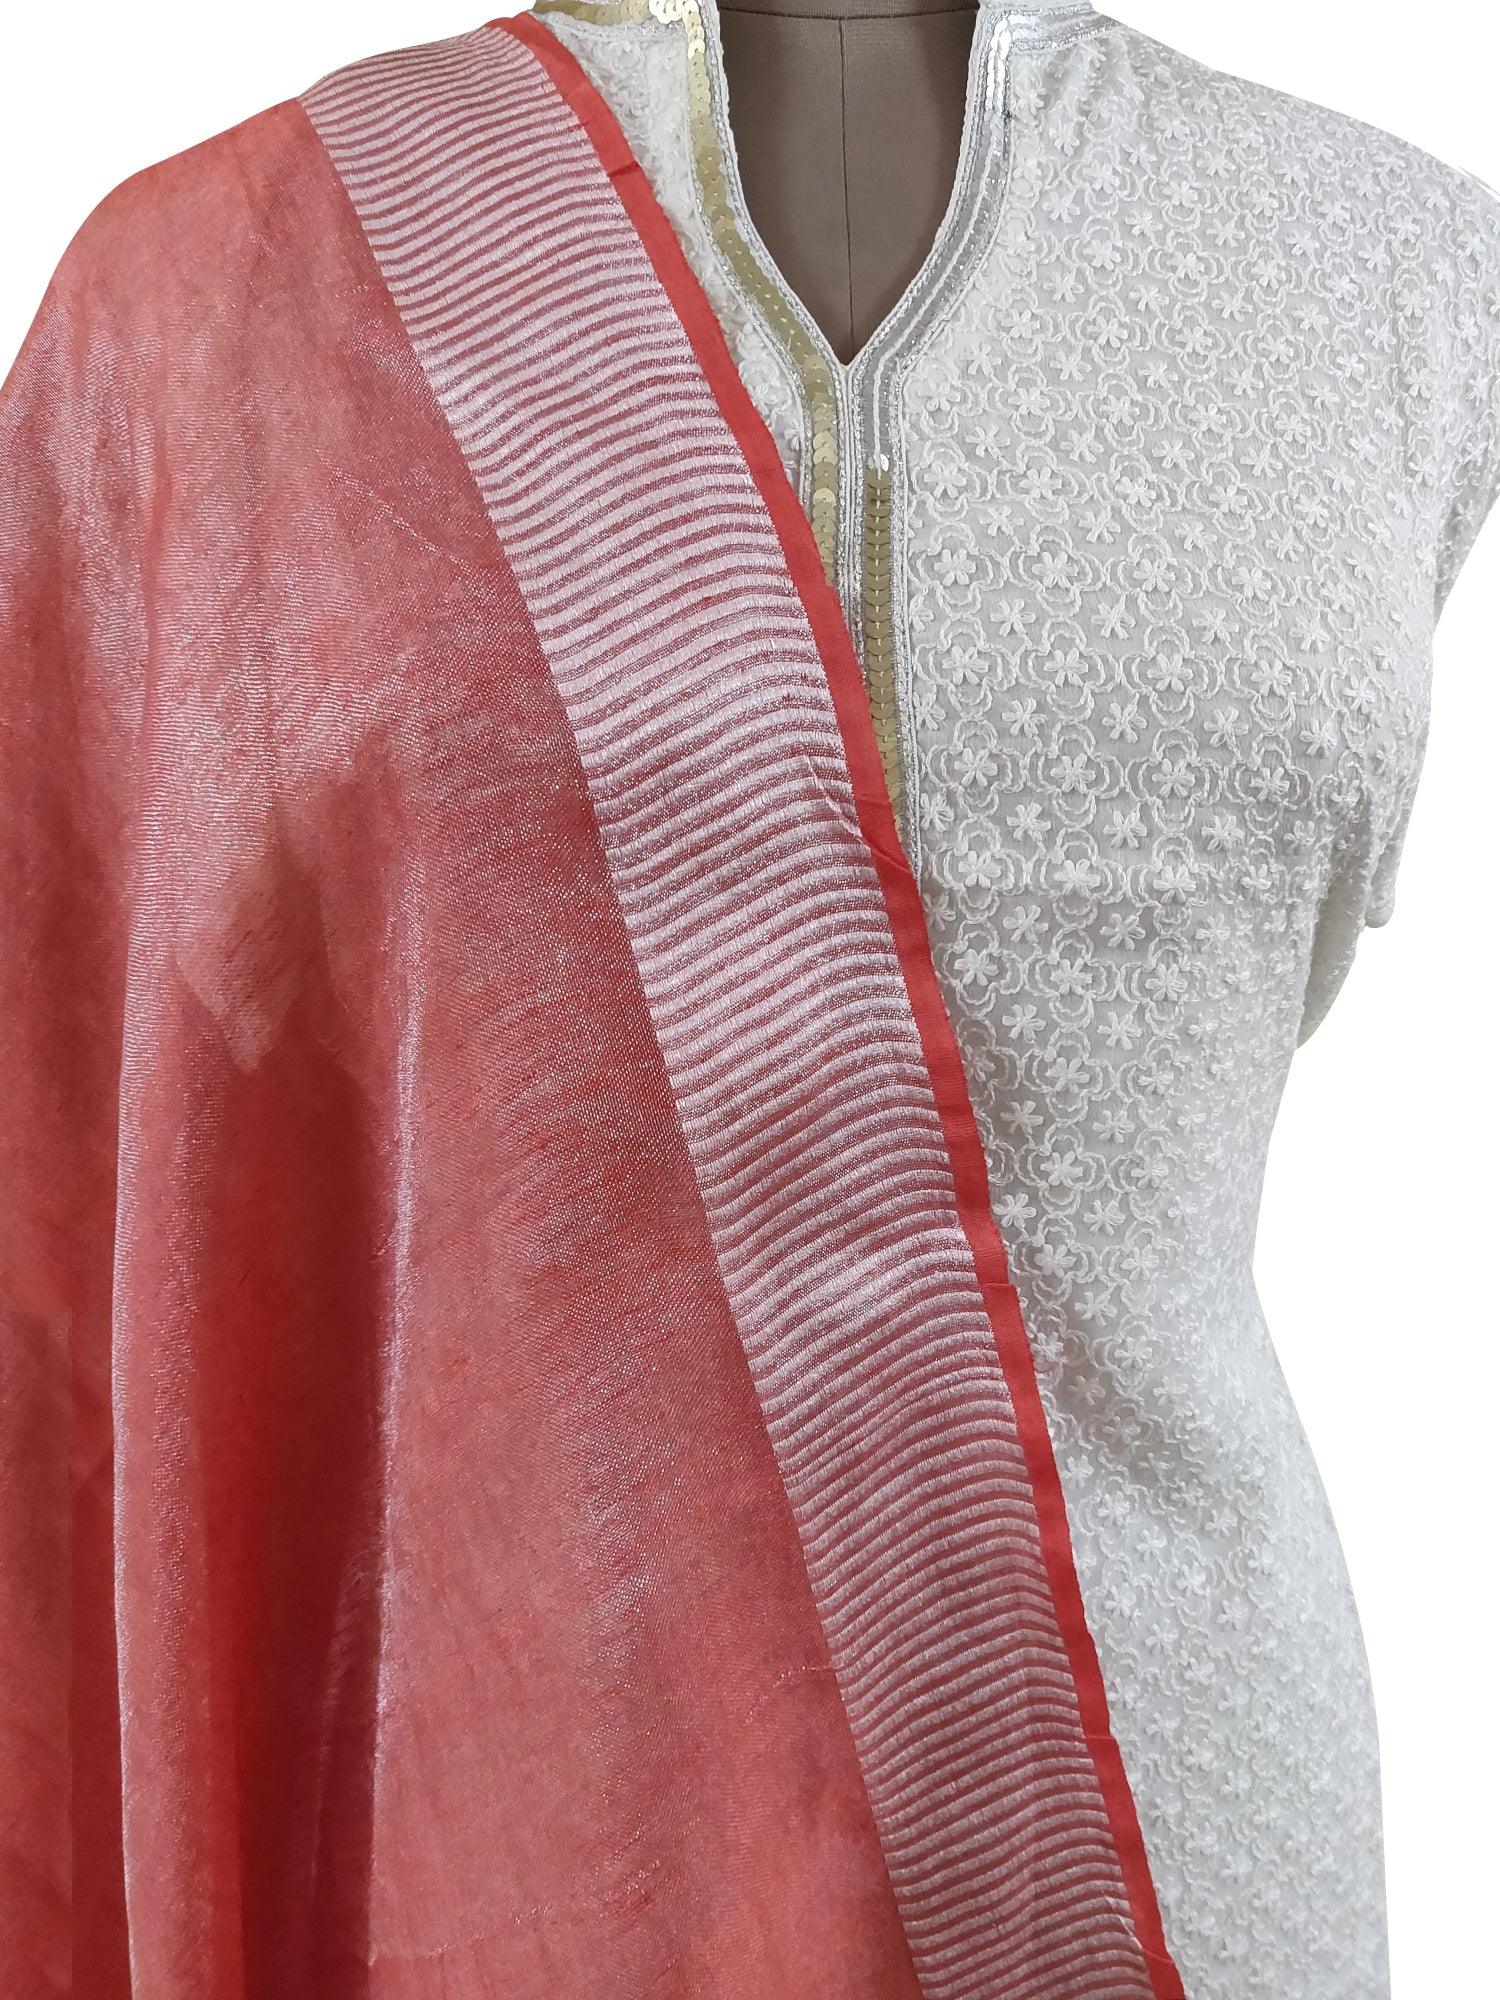 Handloom Tissue Linen Pink Dupatta BLD06-Anvi Creations-